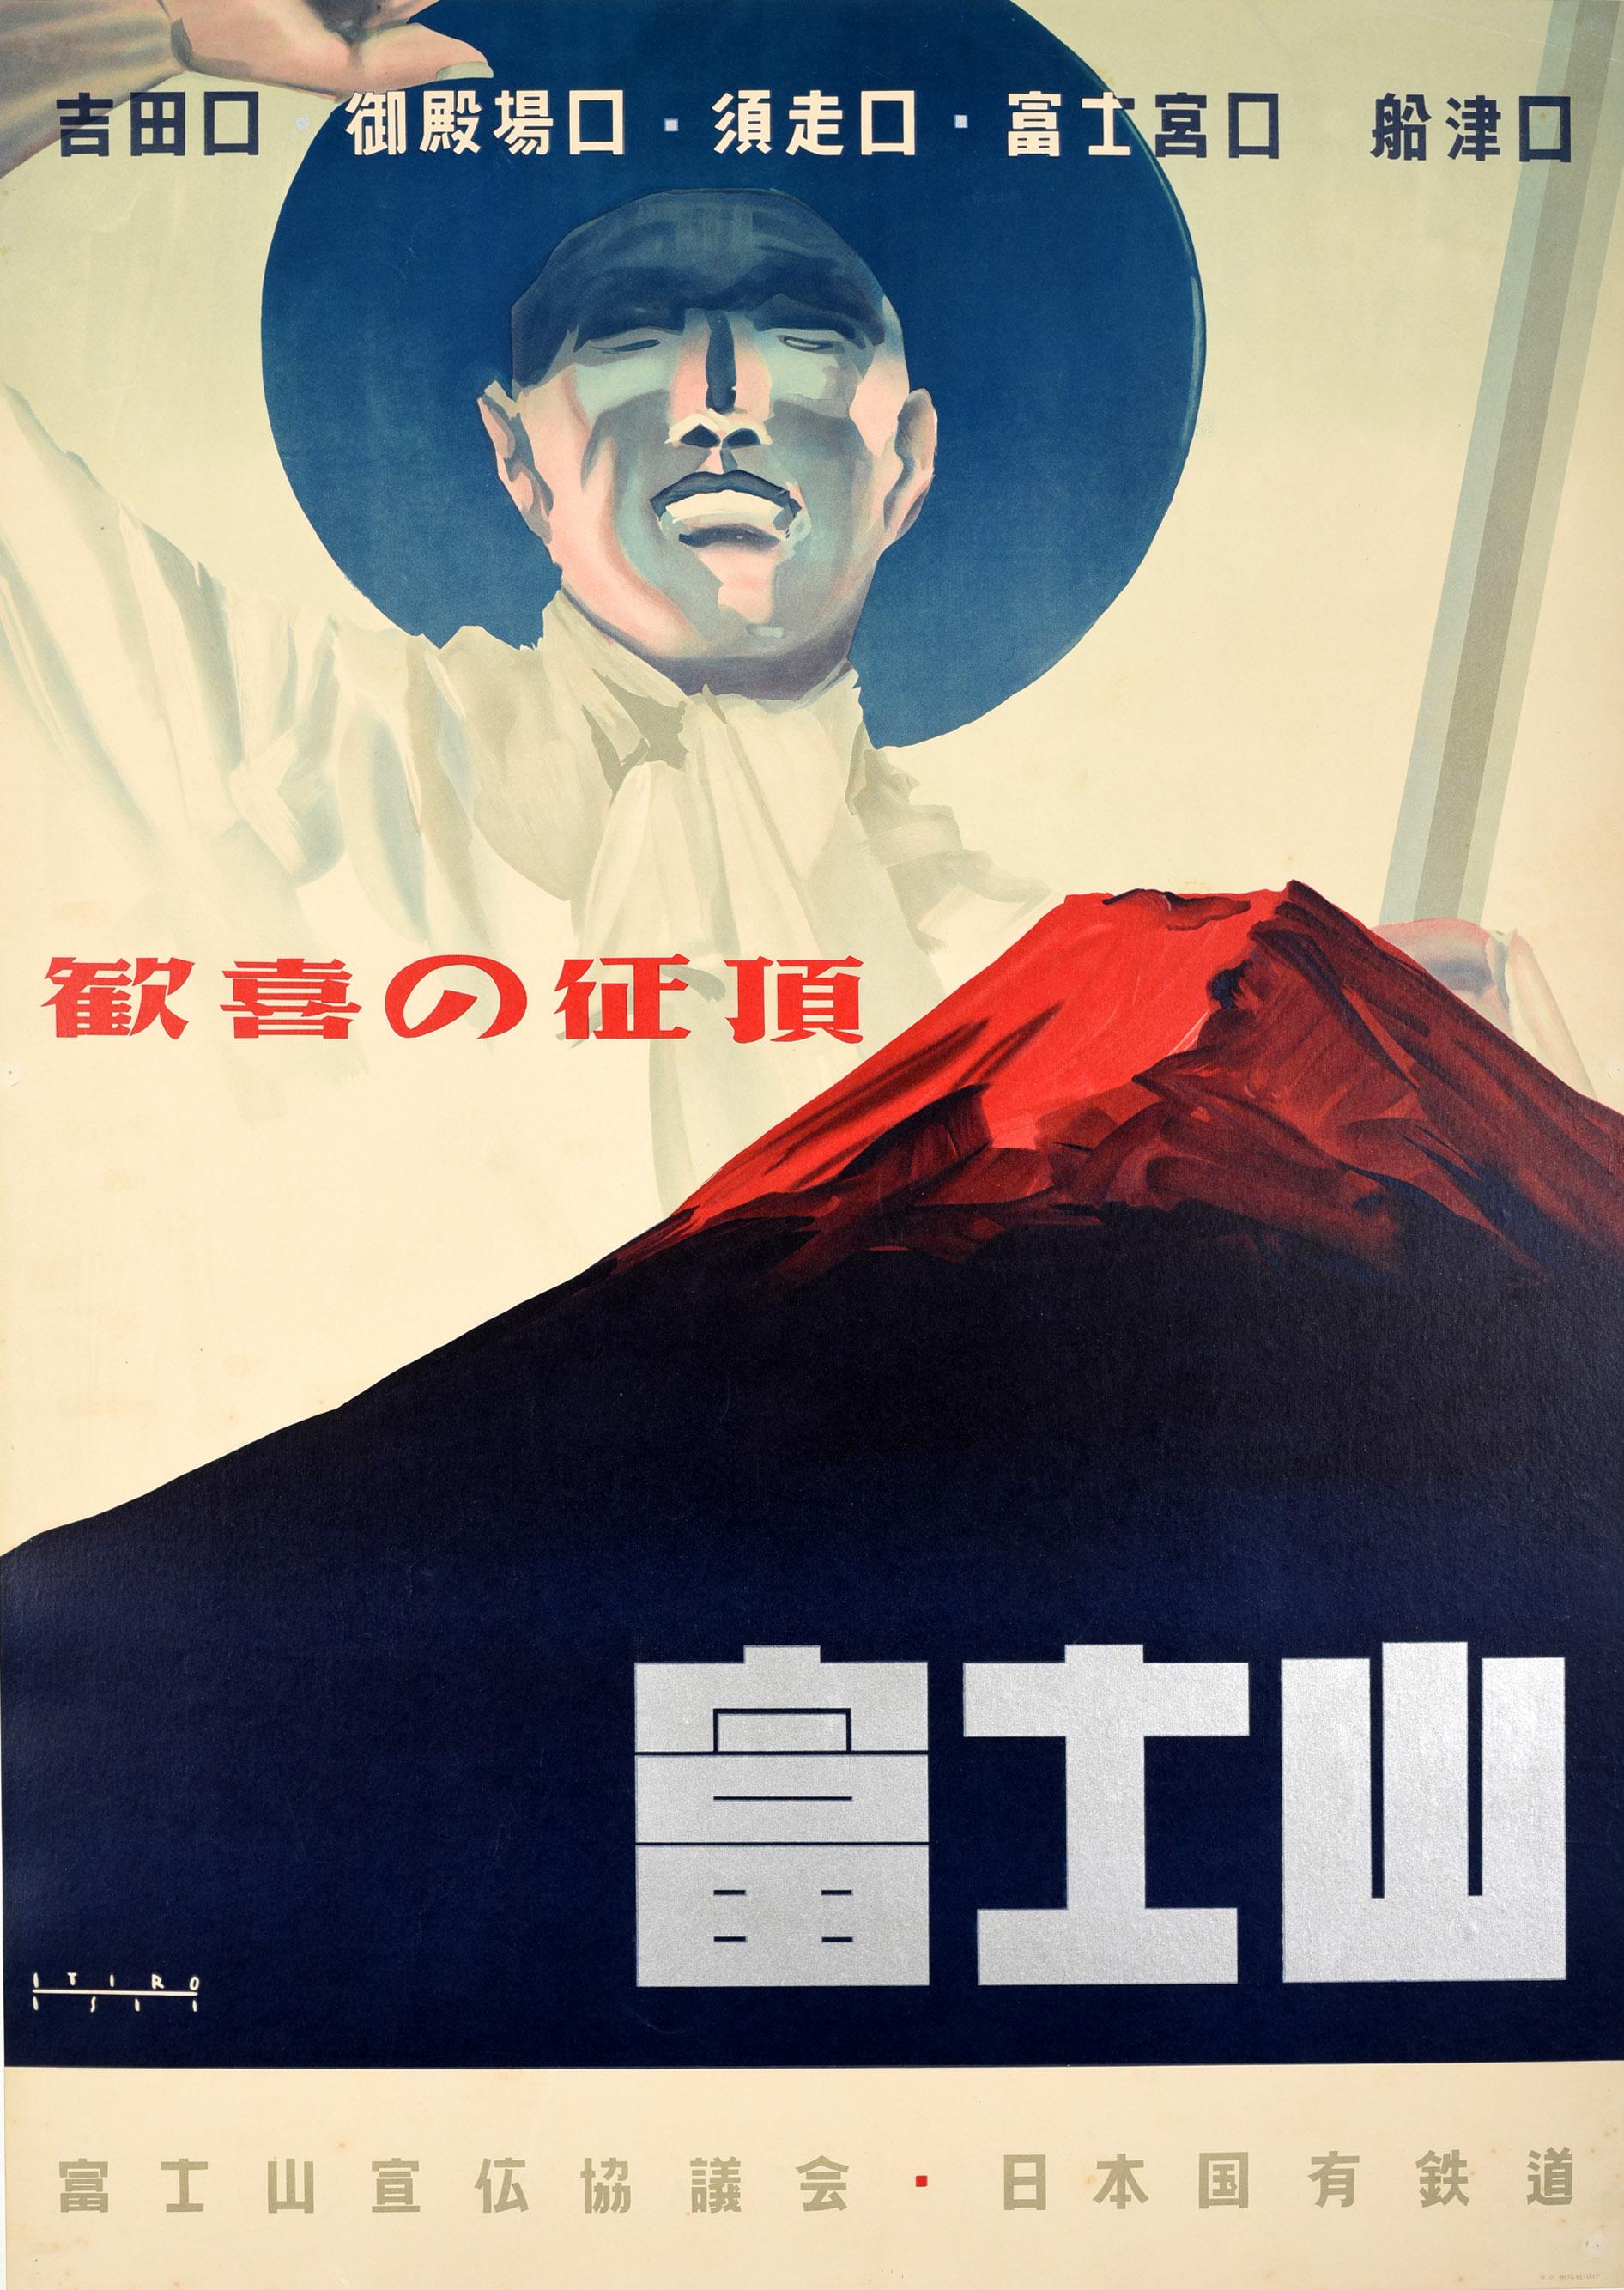 Itiro Isii Print - Original Vintage Japanese Railway Poster Mount Fuji Japan Train Travel Fuji-San